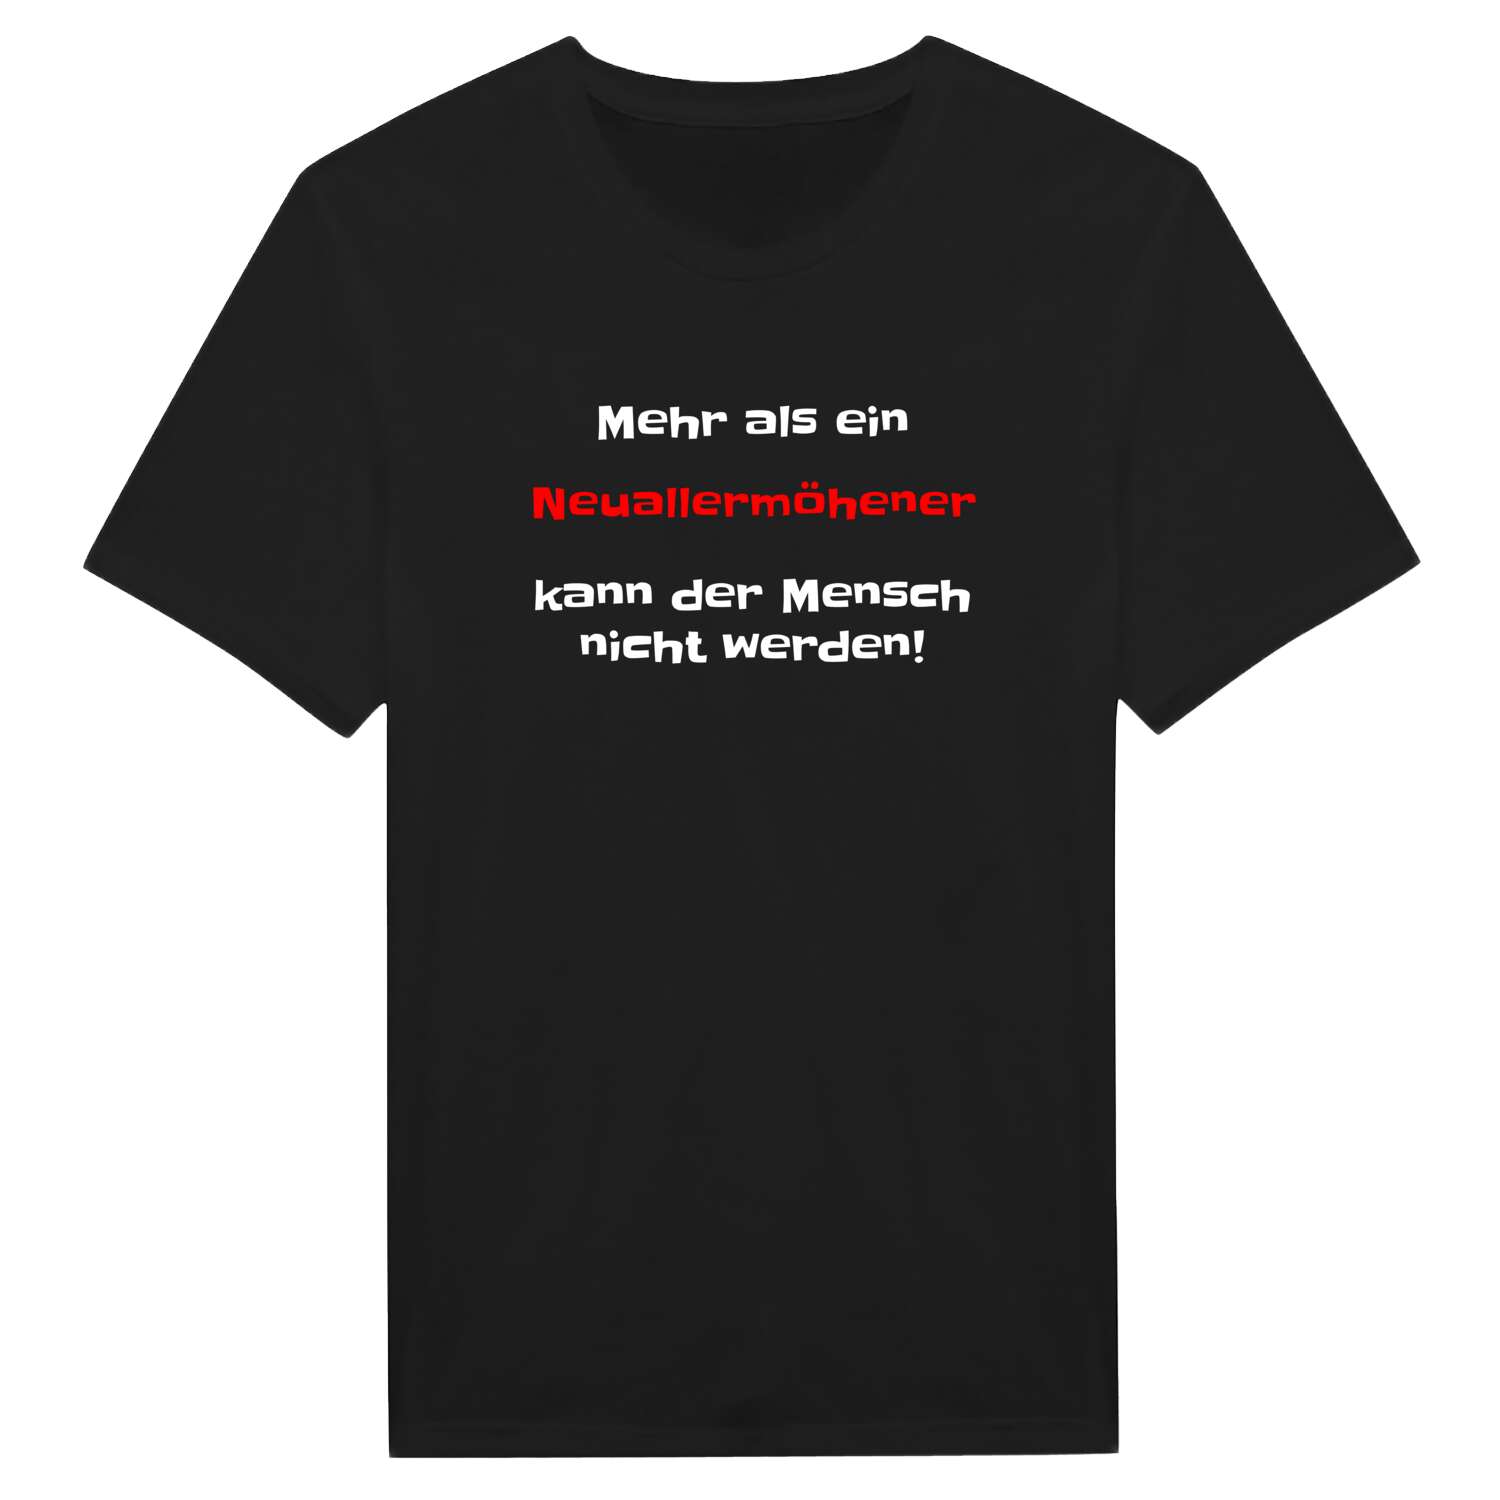 Neuallermöhe T-Shirt »Mehr als ein«